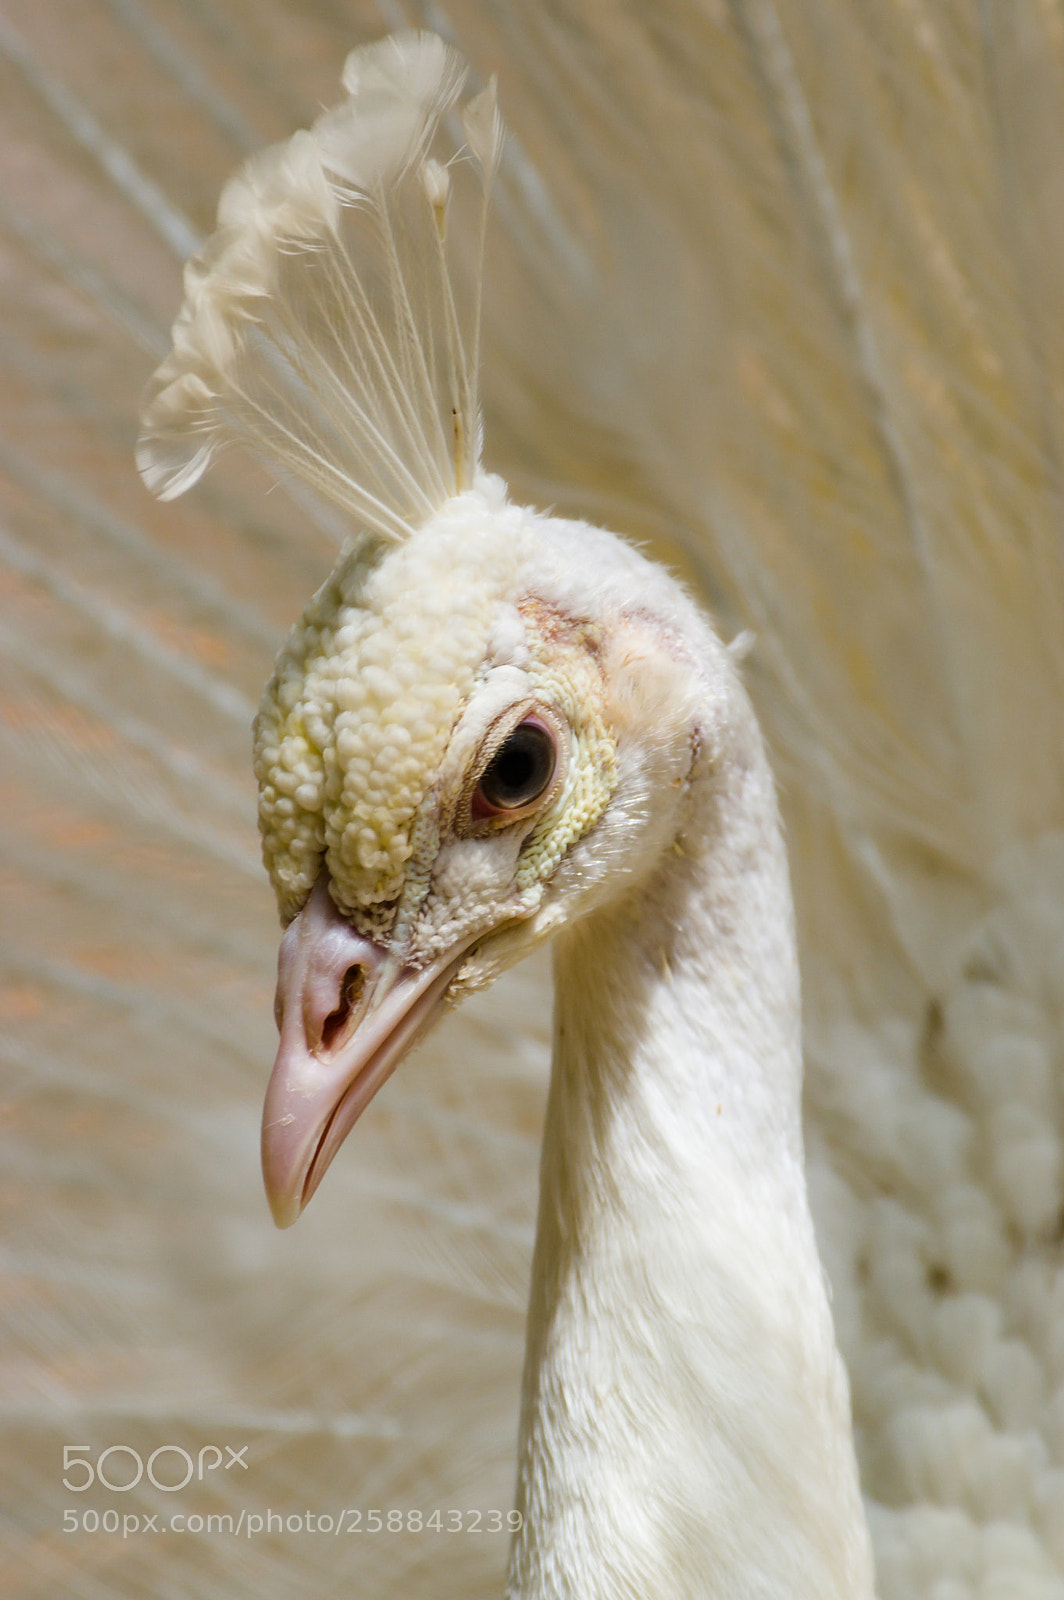 Pentax K-3 sample photo. An albino peacock photography